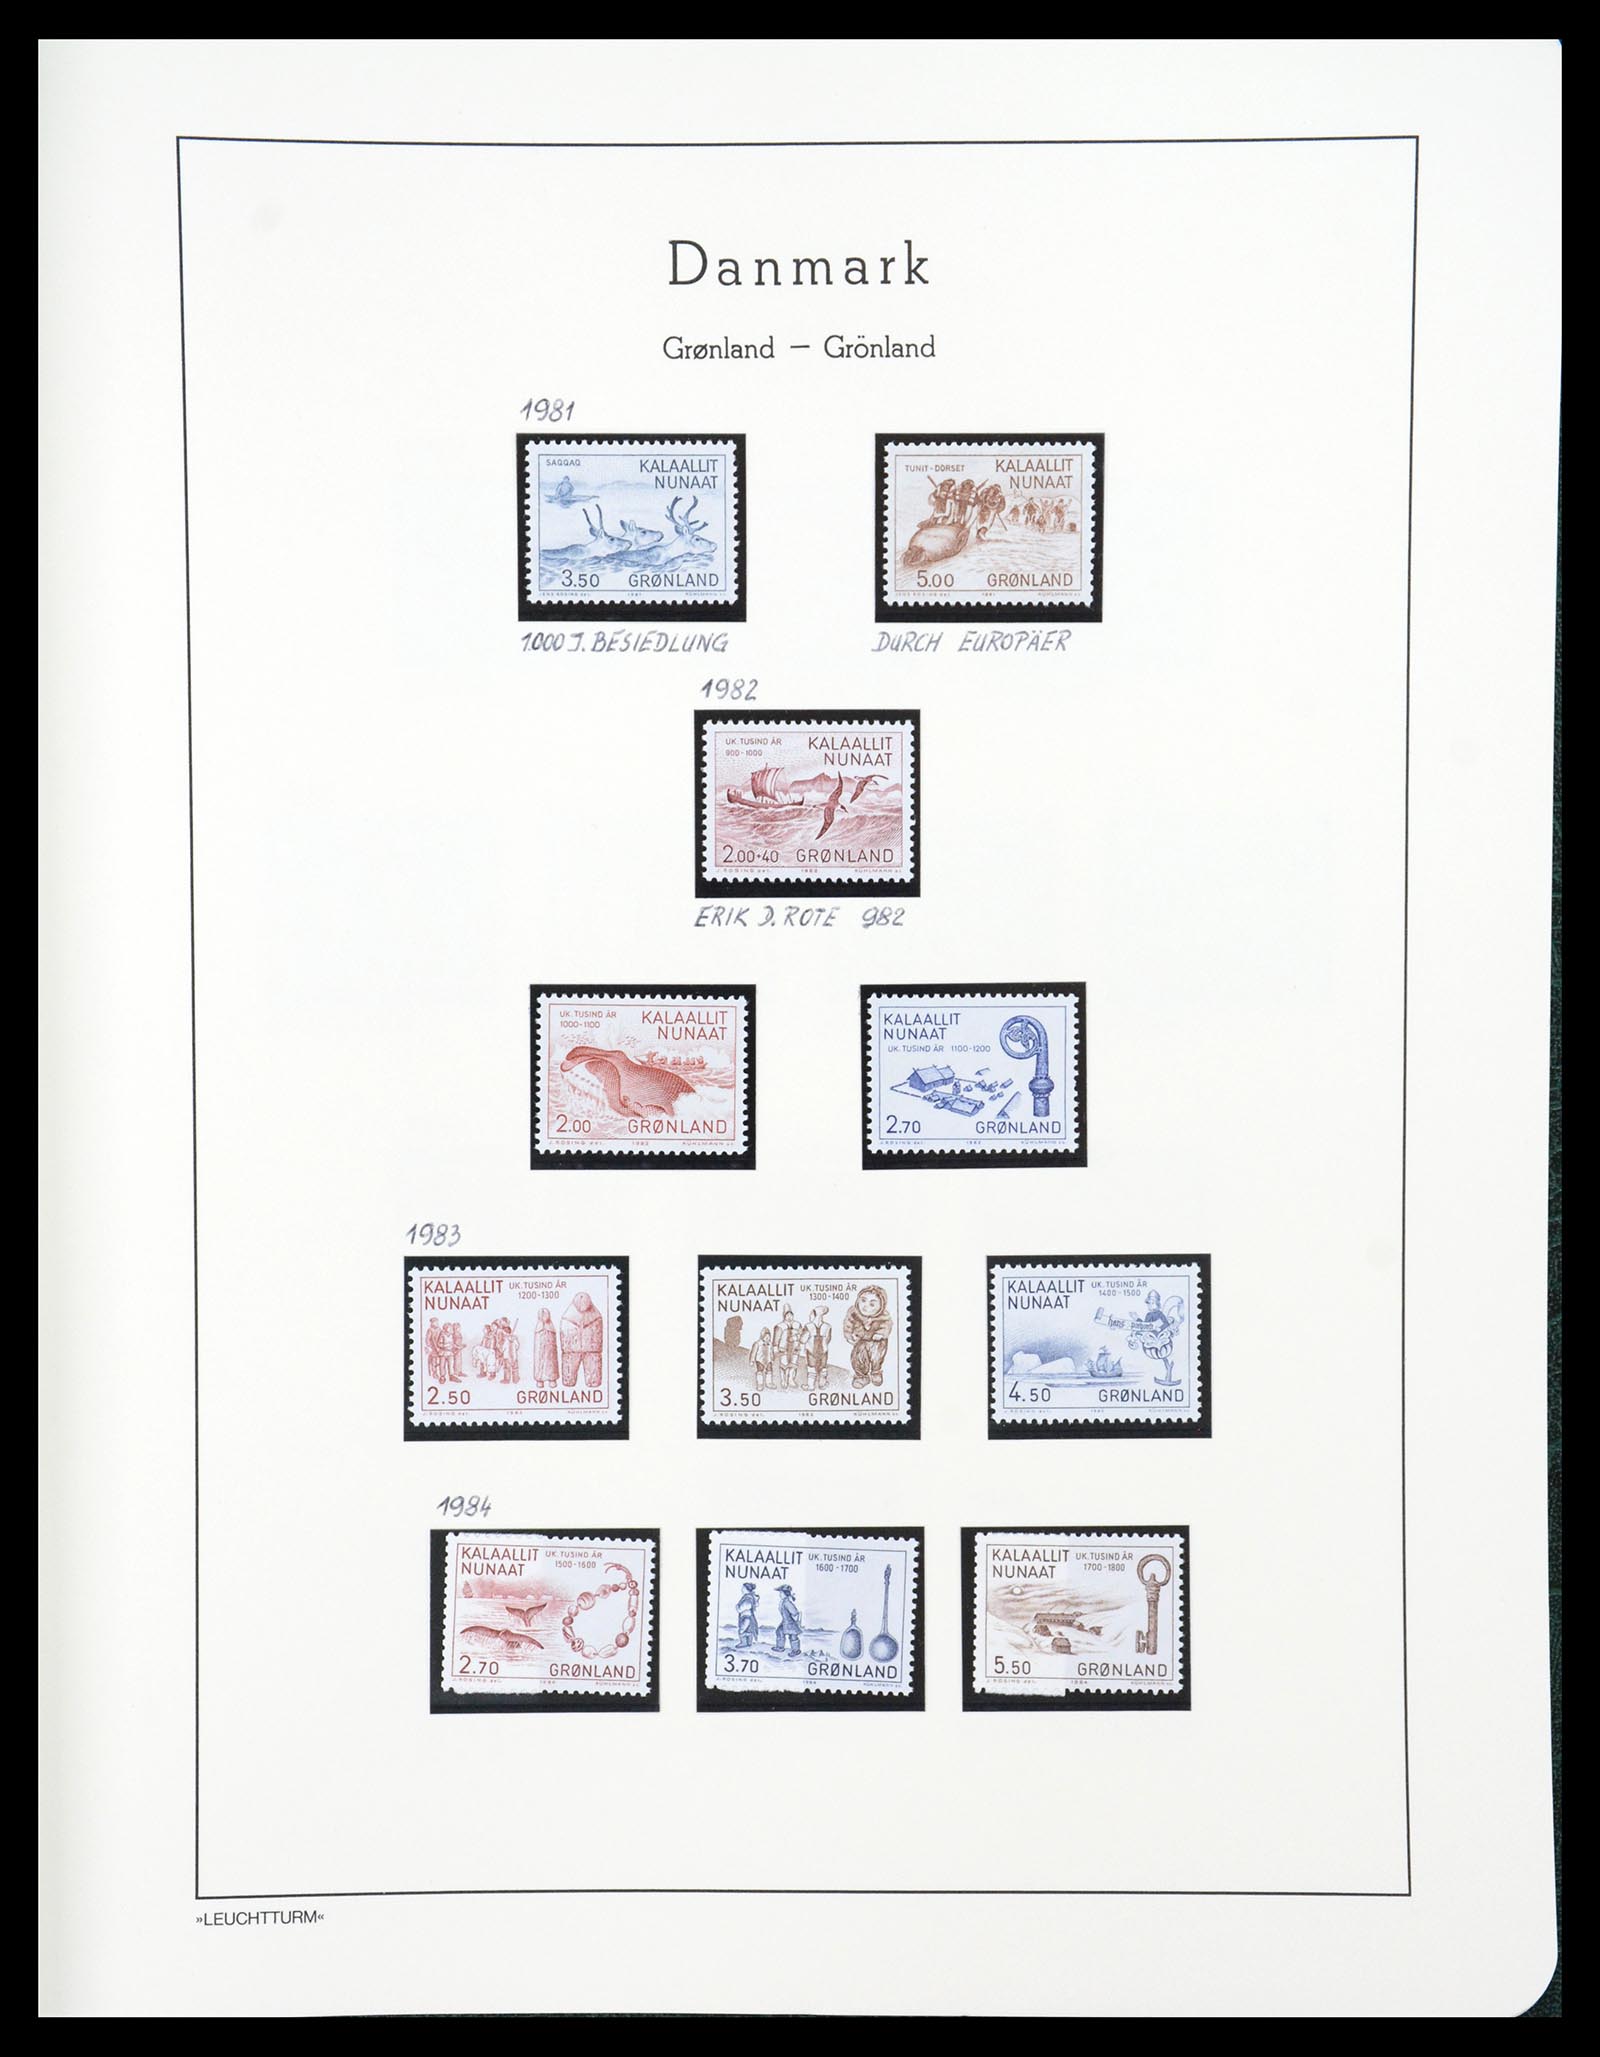 36612 182 - Stamp collection 36612 Denemarken 1851-1990.